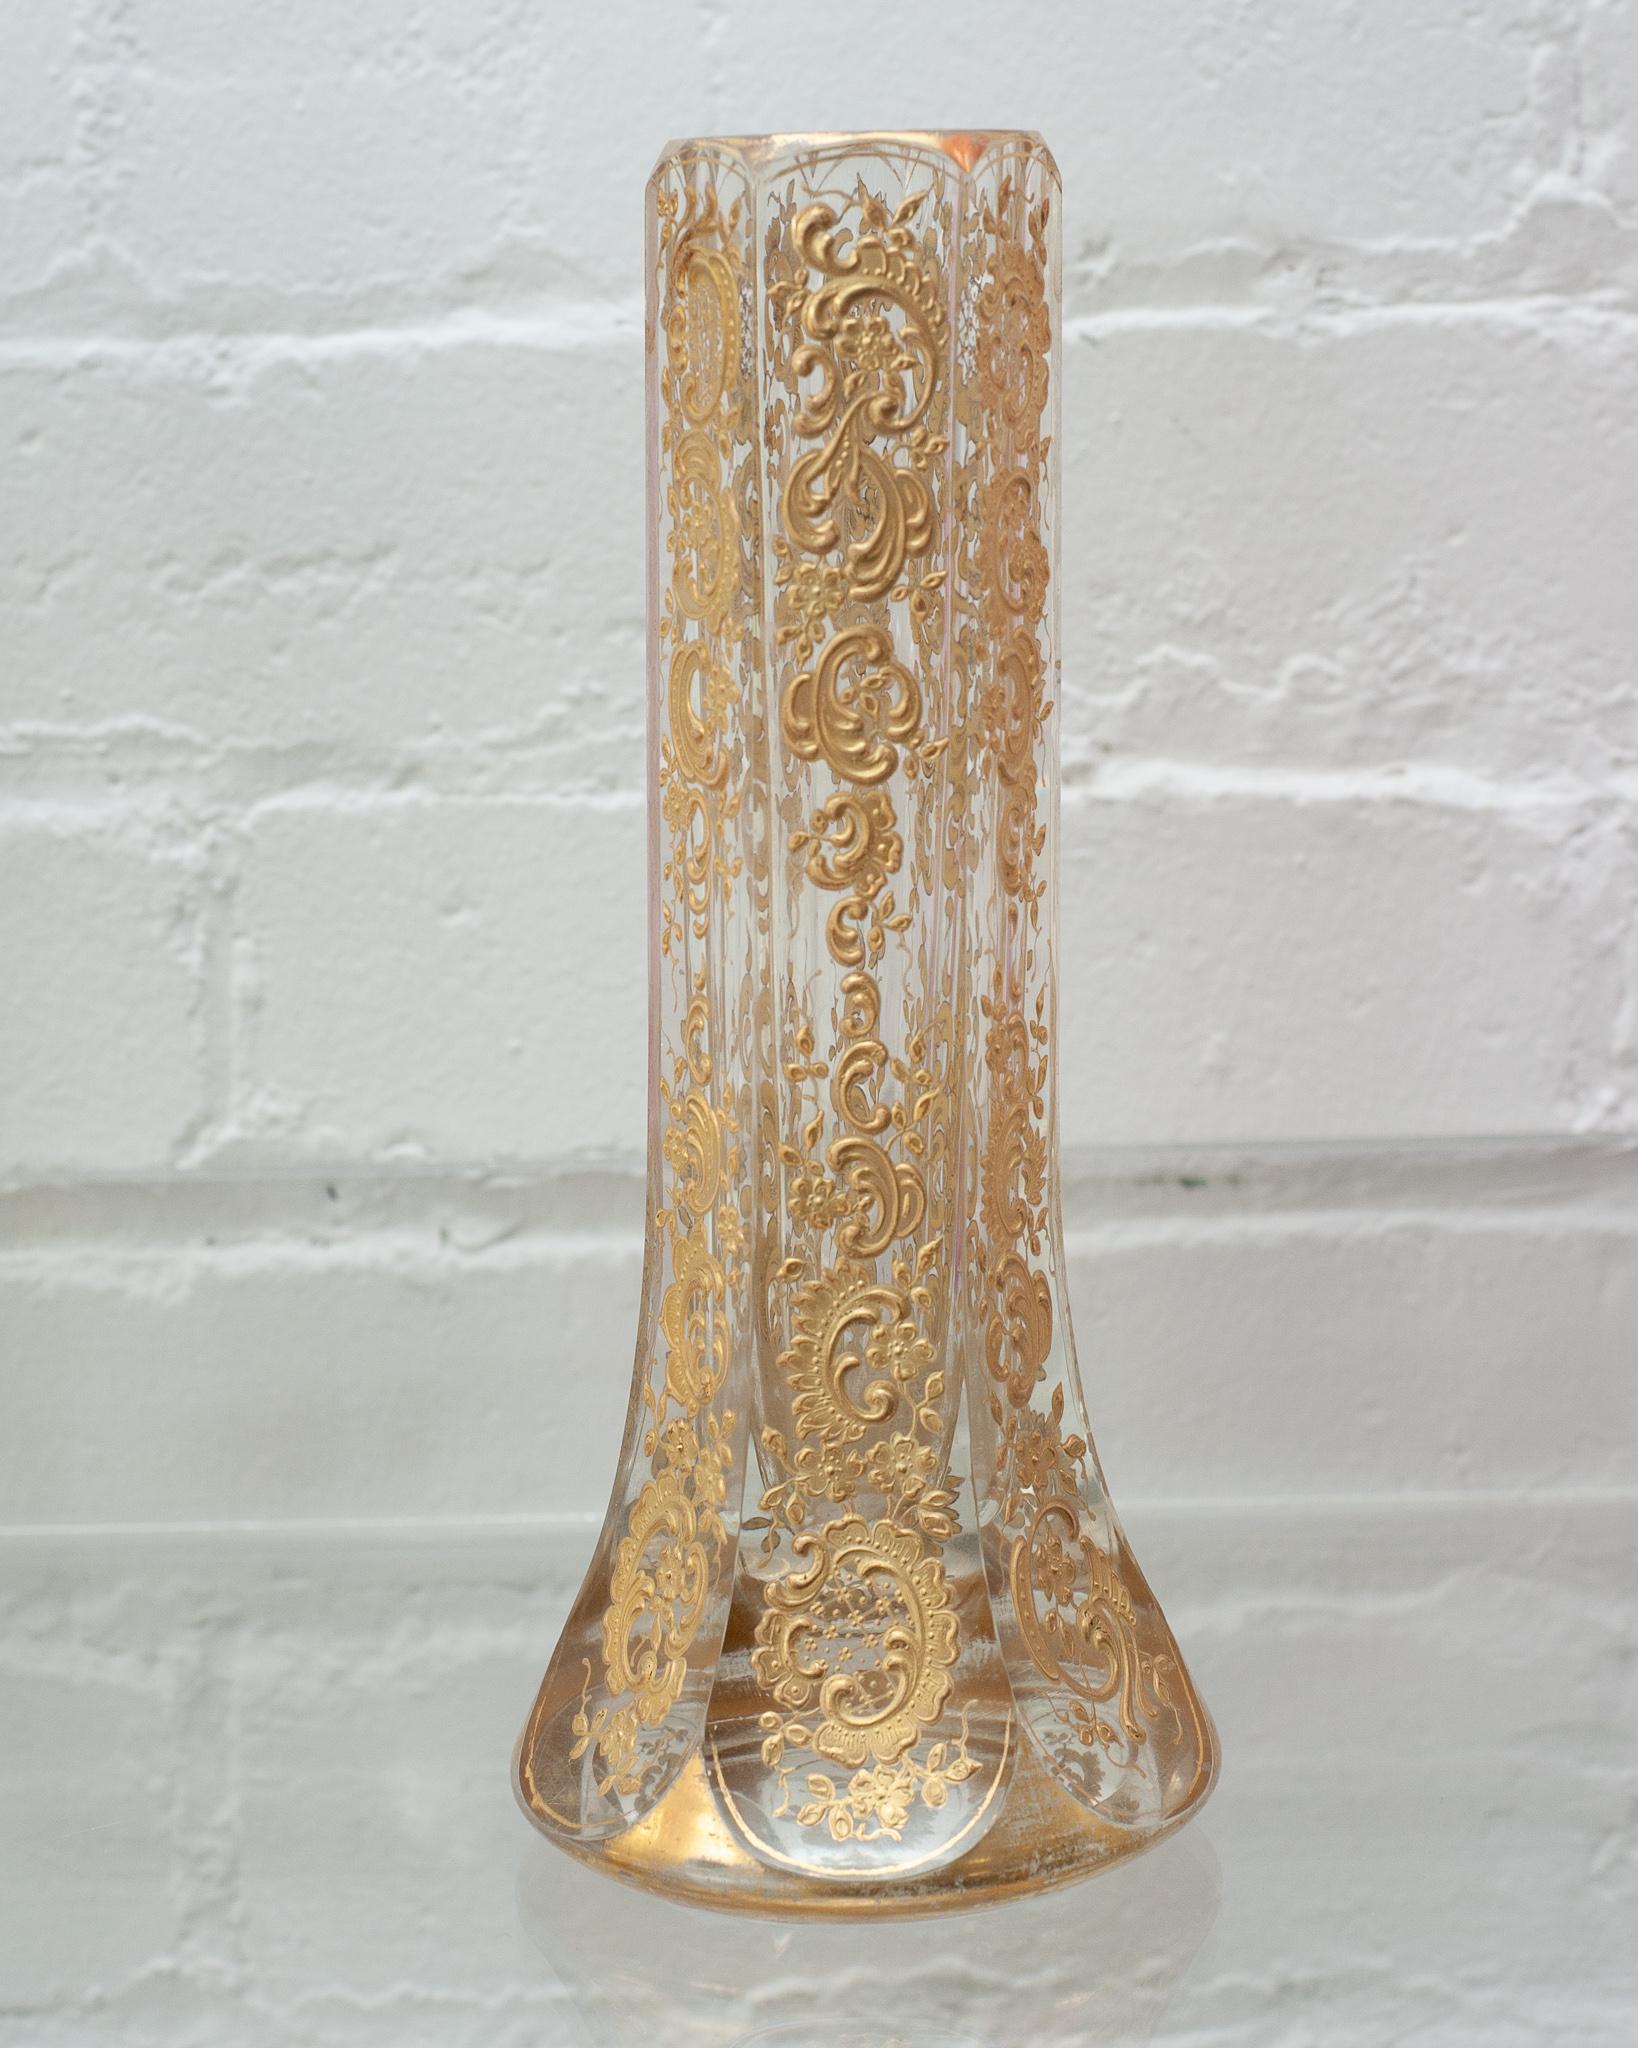 Un étonnant vase évasé en cristal Moser avec une dorure élaborée et lourde. Un parfait vase à bourgeons, ce récipient est aussi beau vide que rempli. Qualité très robuste et solide.